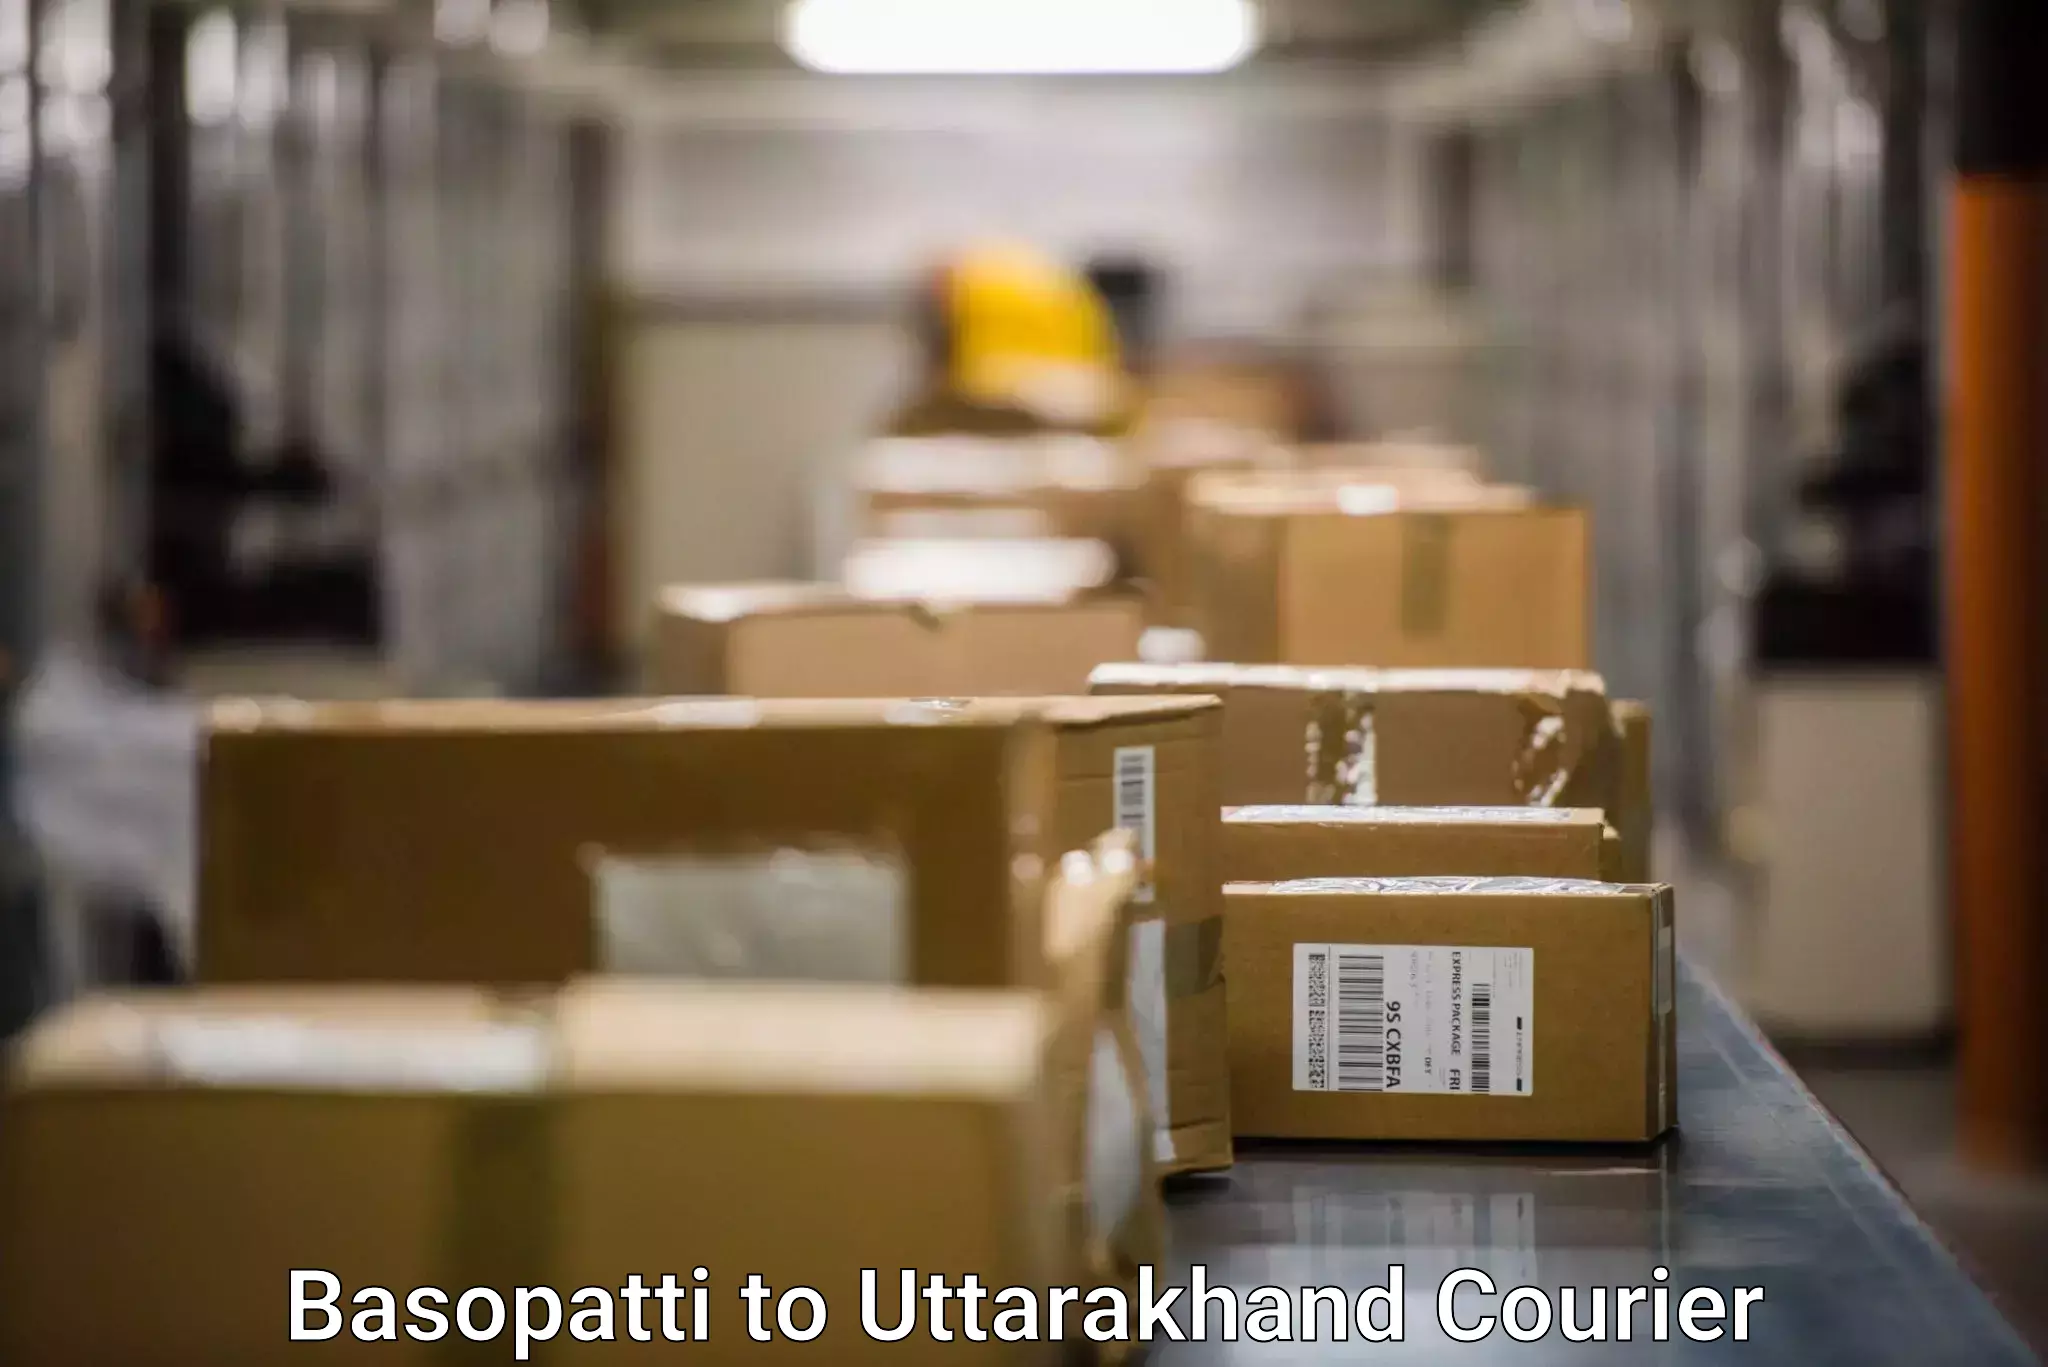 Speedy delivery service Basopatti to Rishikesh